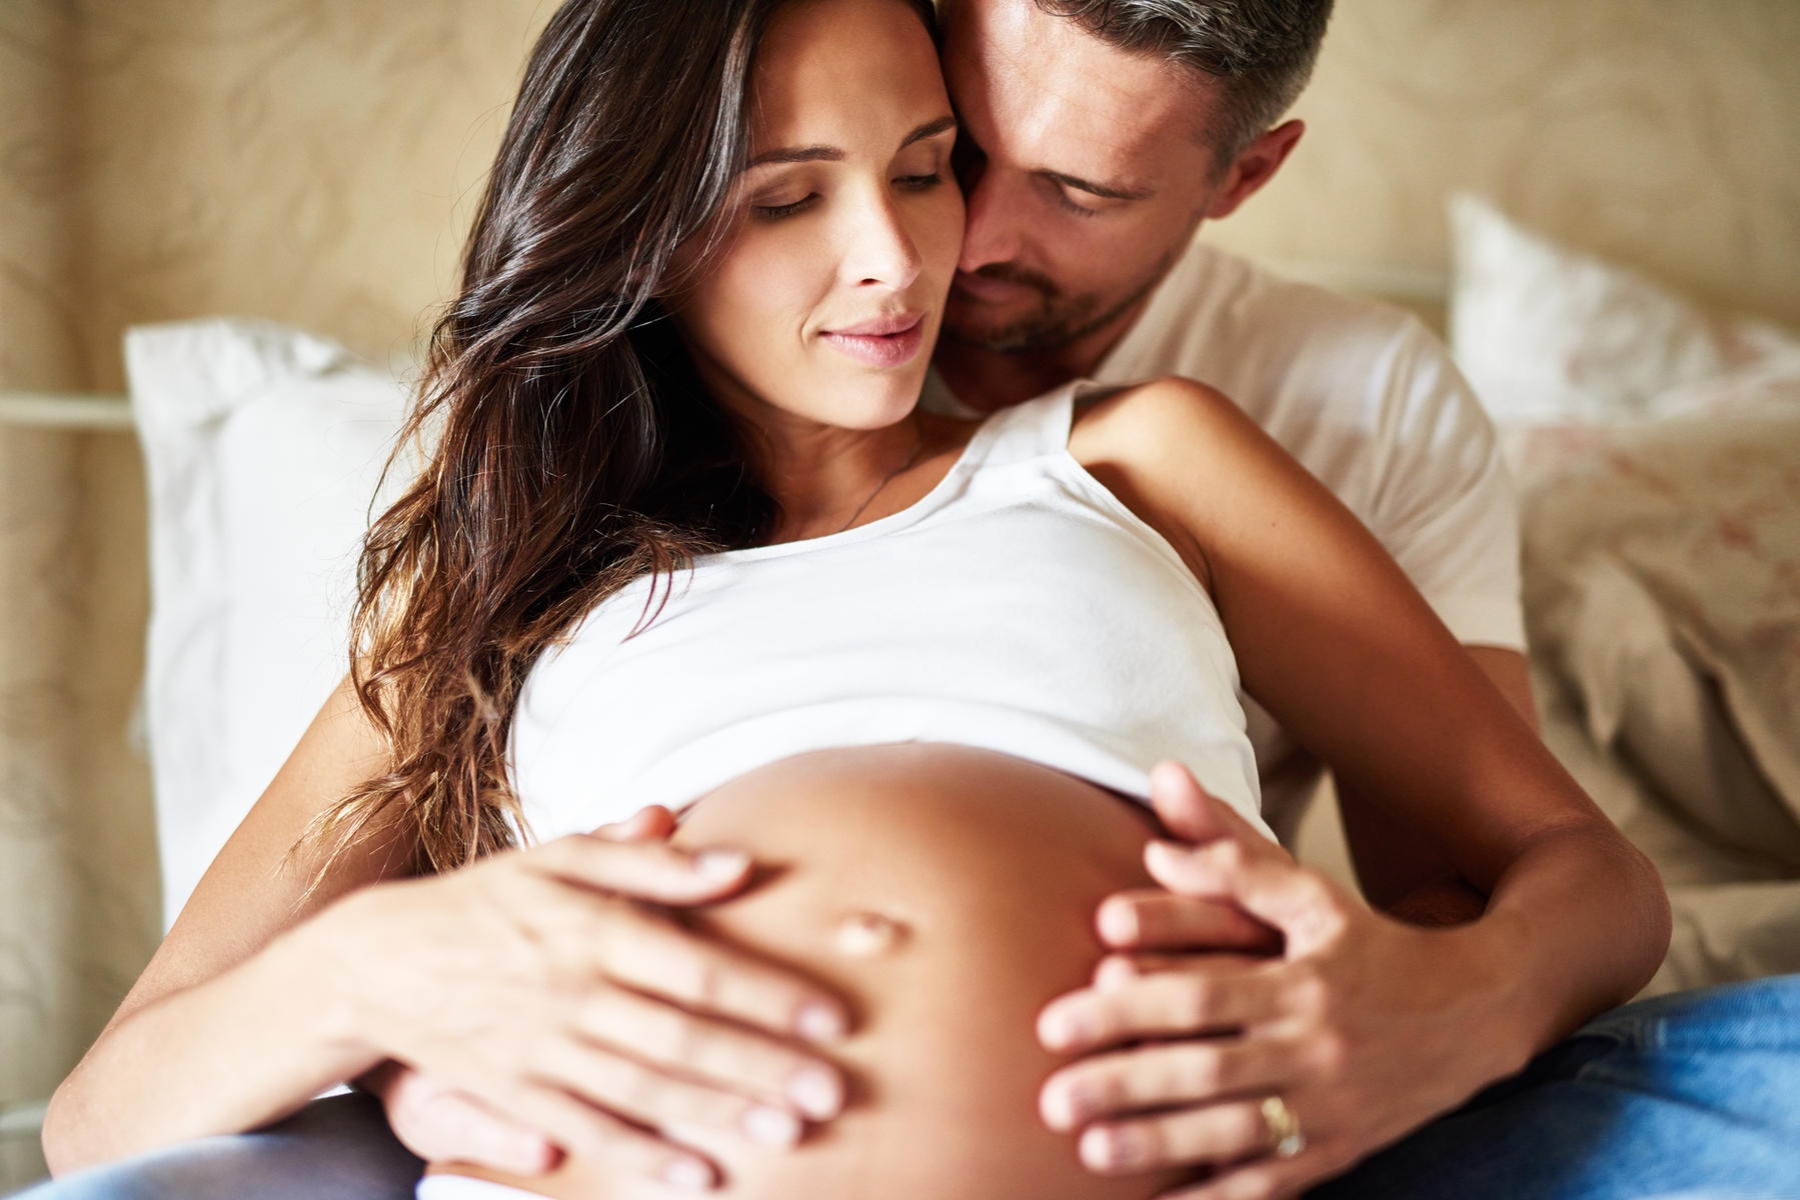 Σεξ εγκυμοσύνη: Είναι το σεξ ασφαλές κατά τη διάρκεια της εγκυμοσύνης